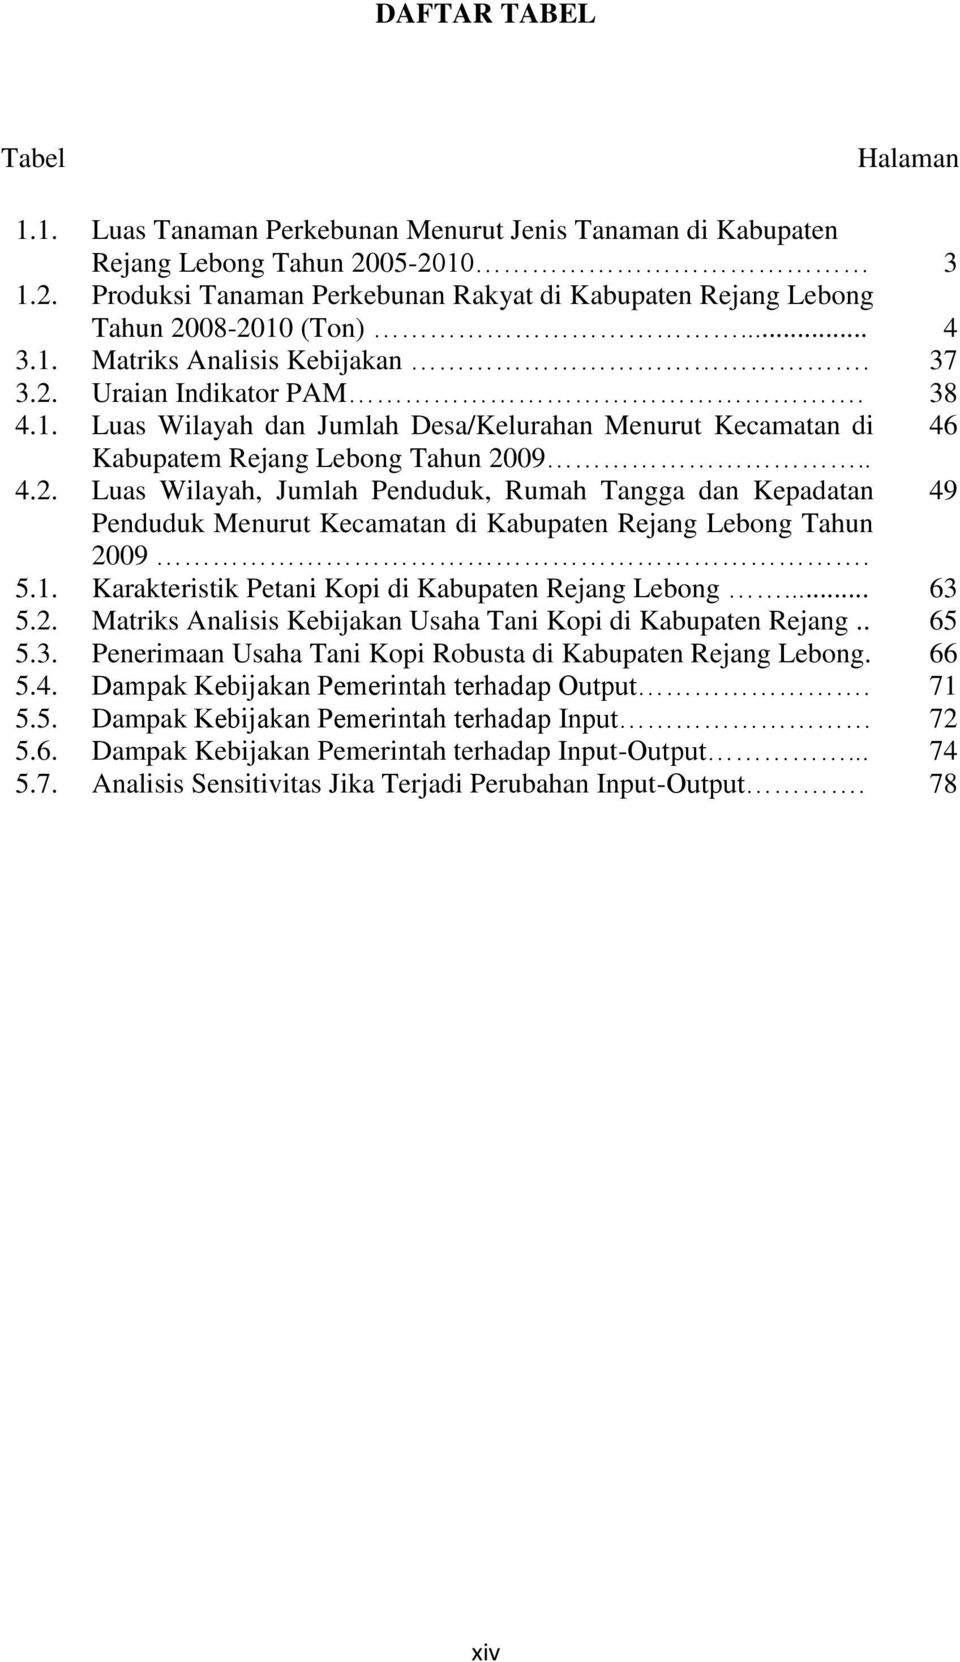 .. Matriks Analisis Kebijakan. Uraian Indikator PAM. Luas Wilayah dan Jumlah Desa/Kelurahan Menurut Kecamatan di Kabupatem Rejang Lebong Tahun 2009.